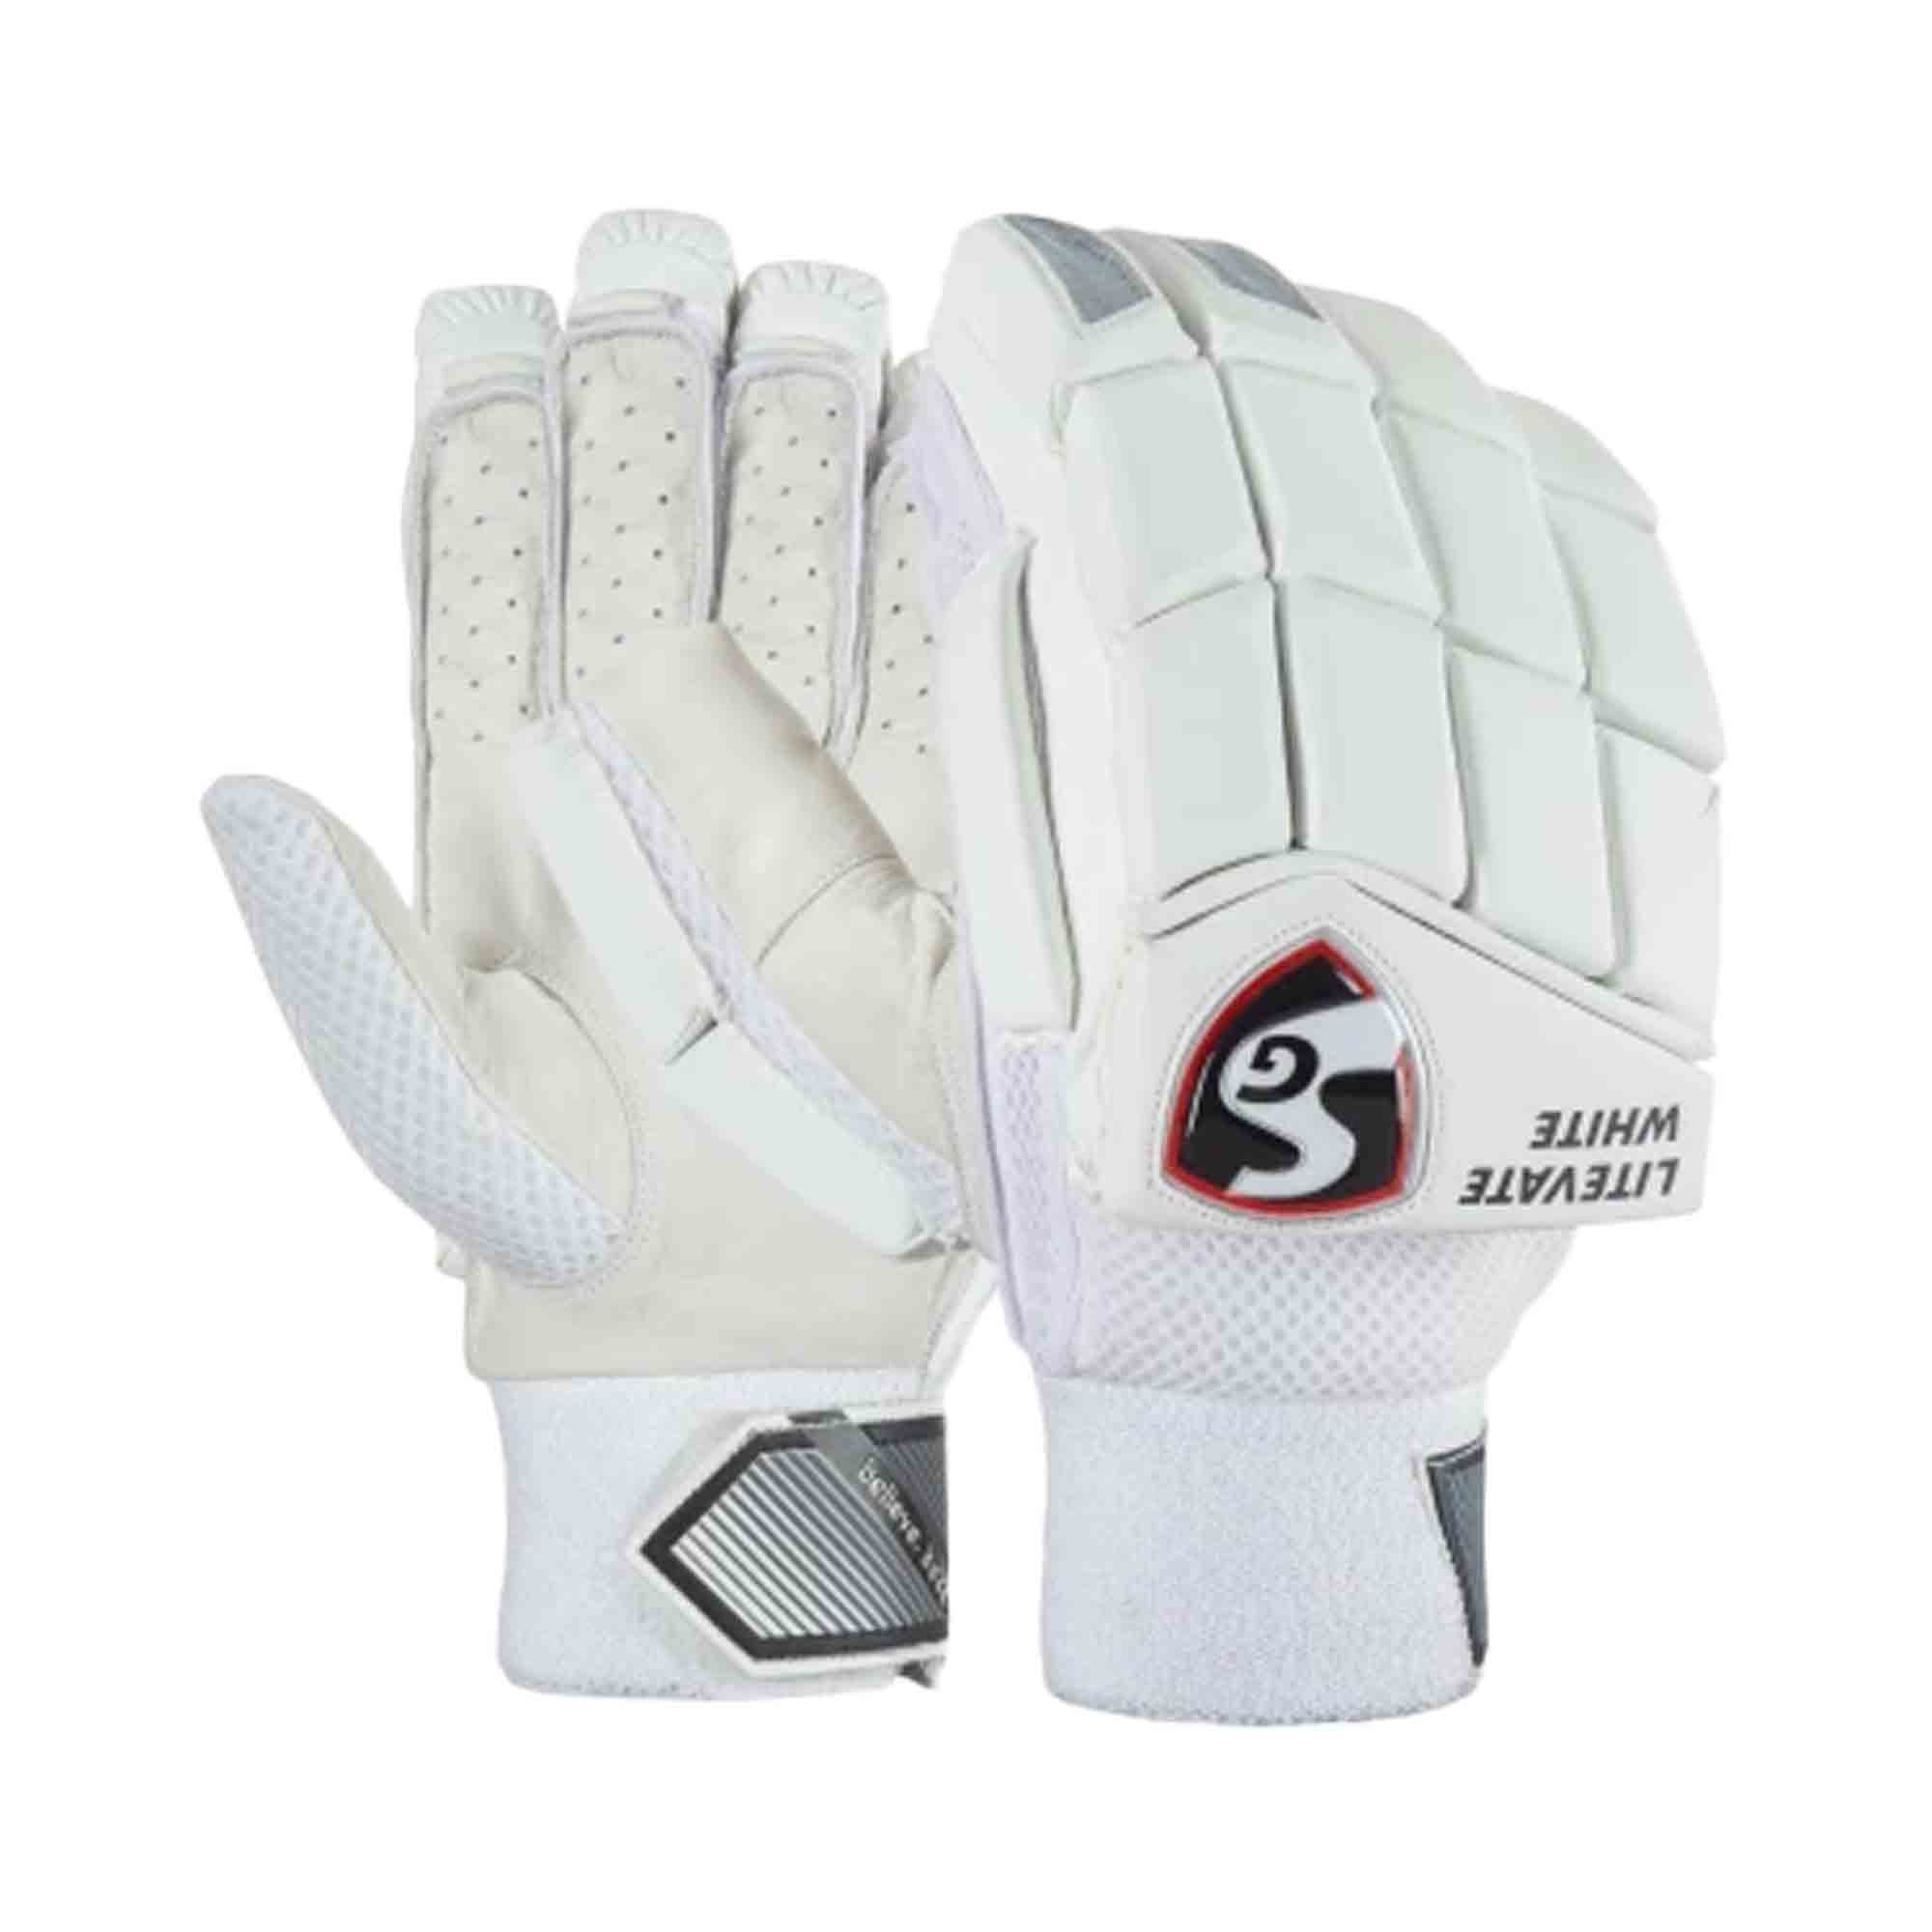 SG Litevate White Cricket Batting Gloves